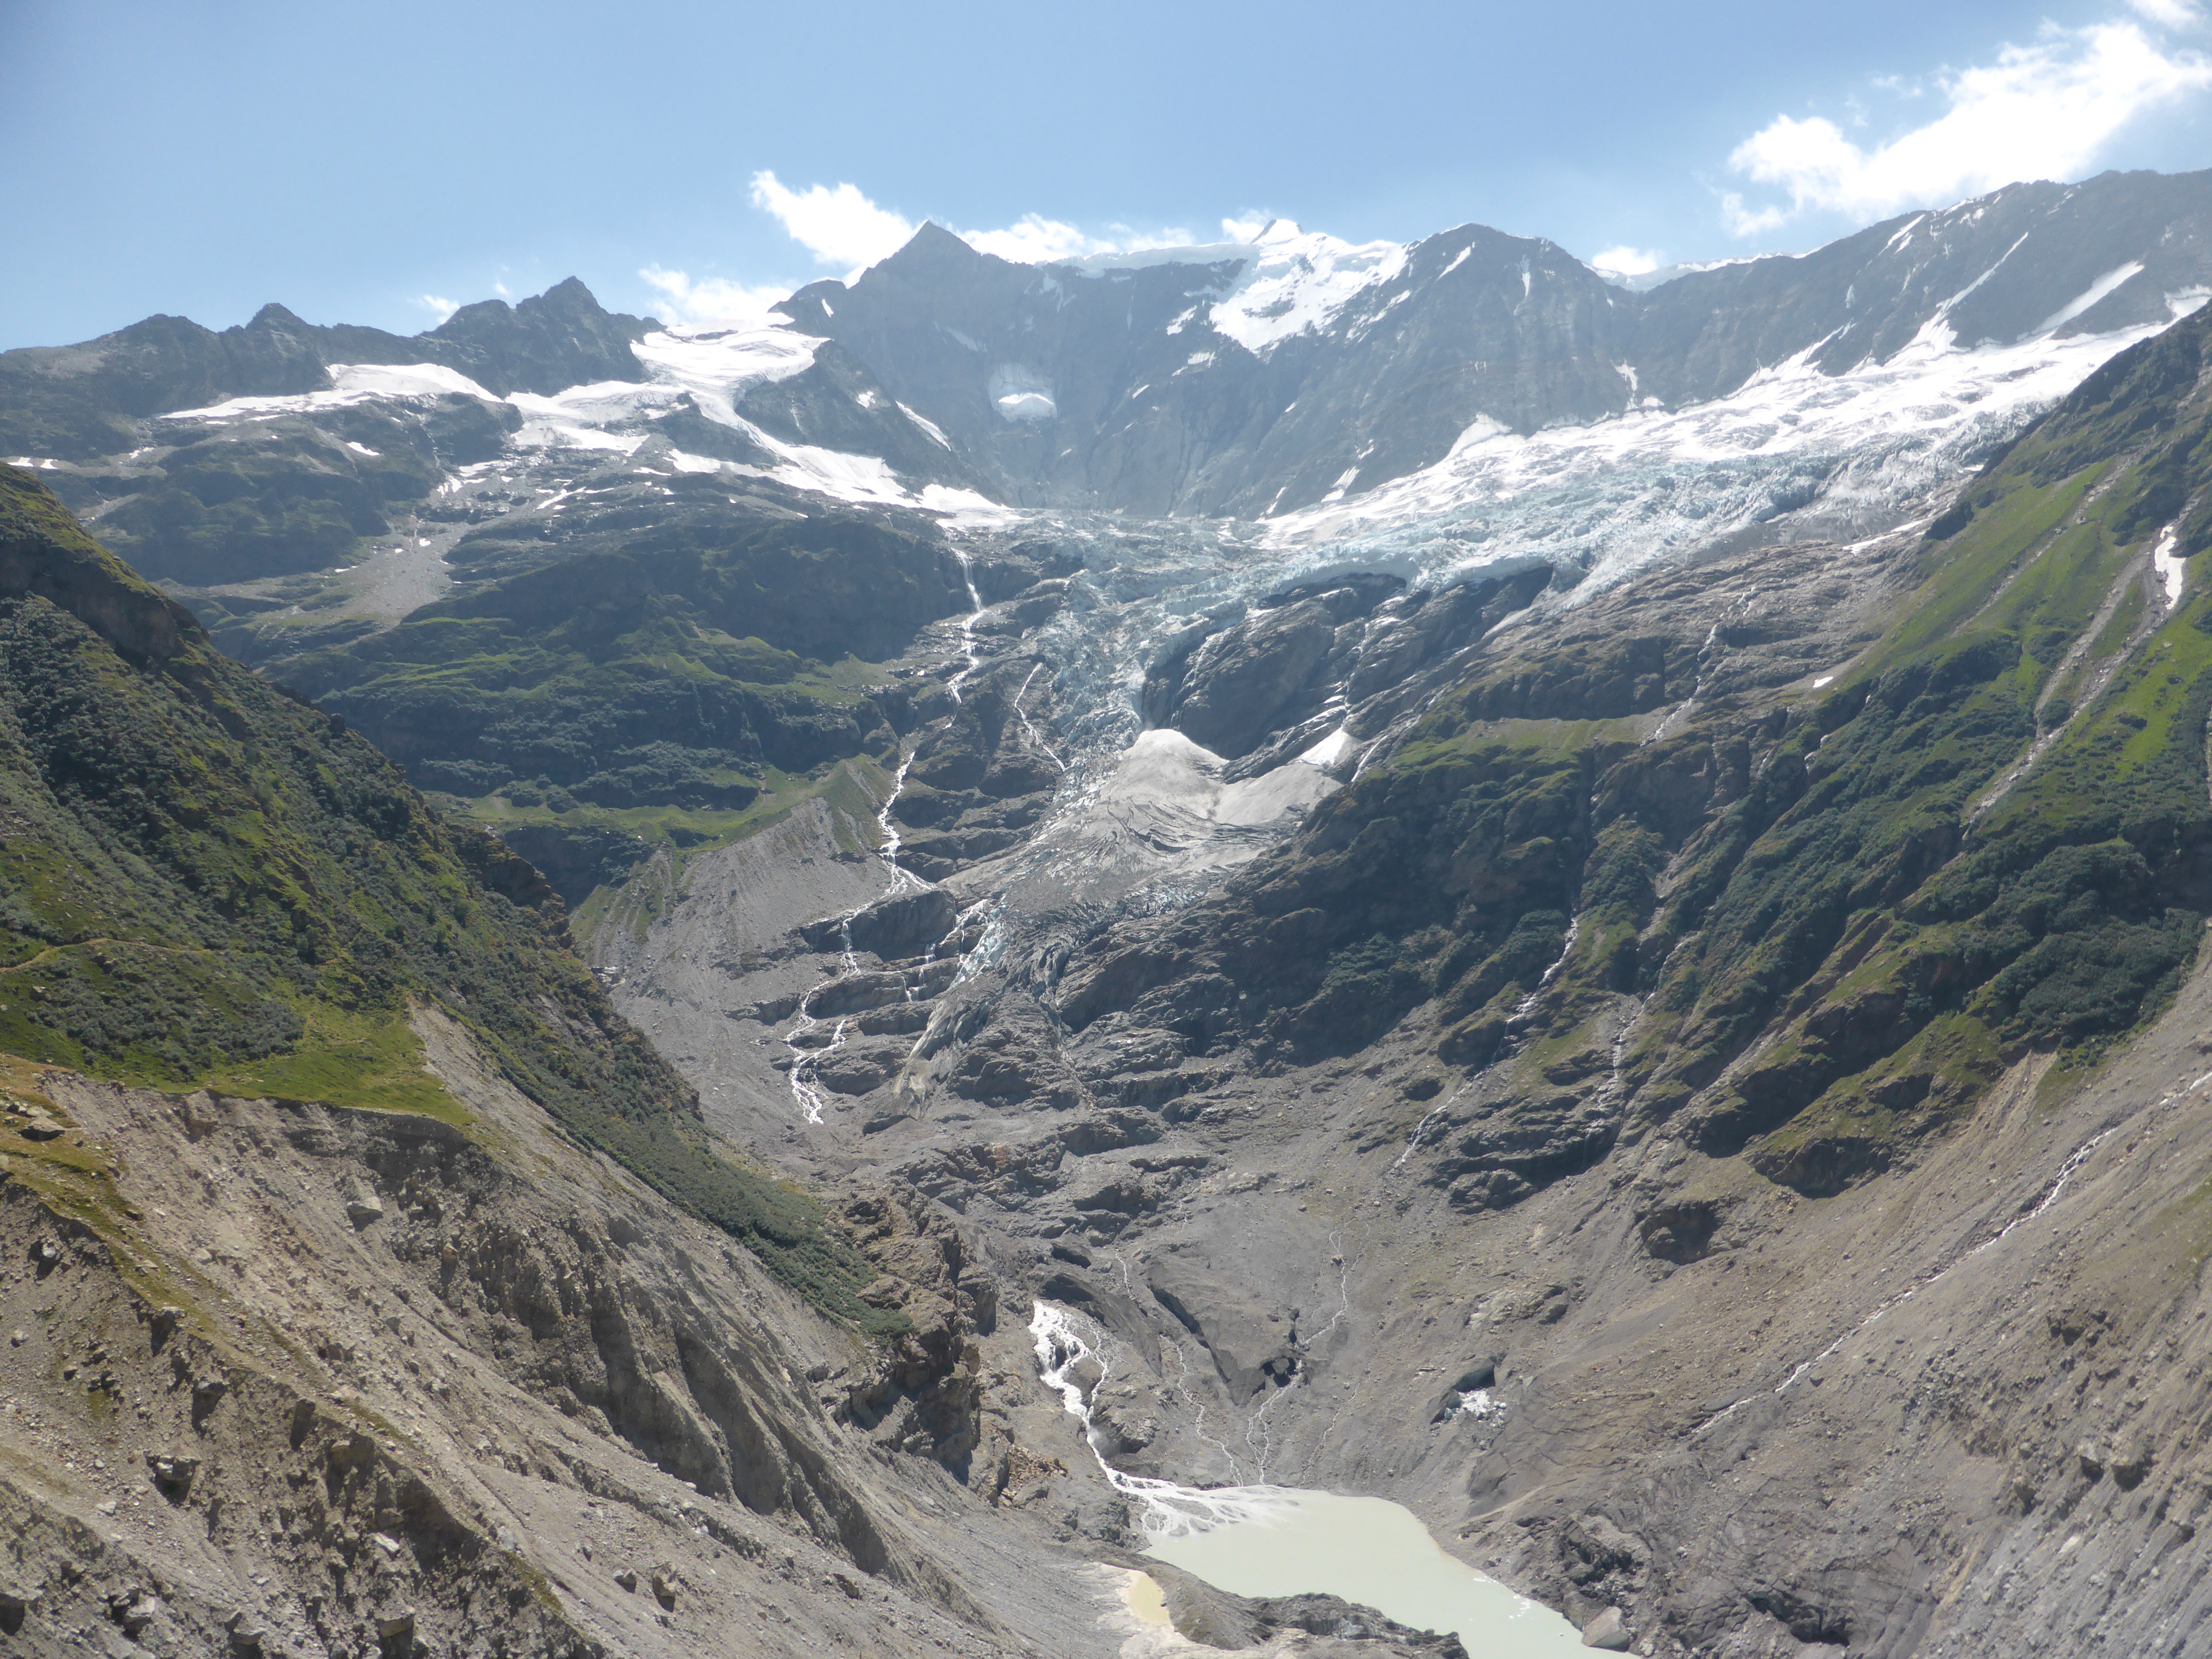 Lower Grindelwald Glacier, Switzerland (S. Nussbaumer)